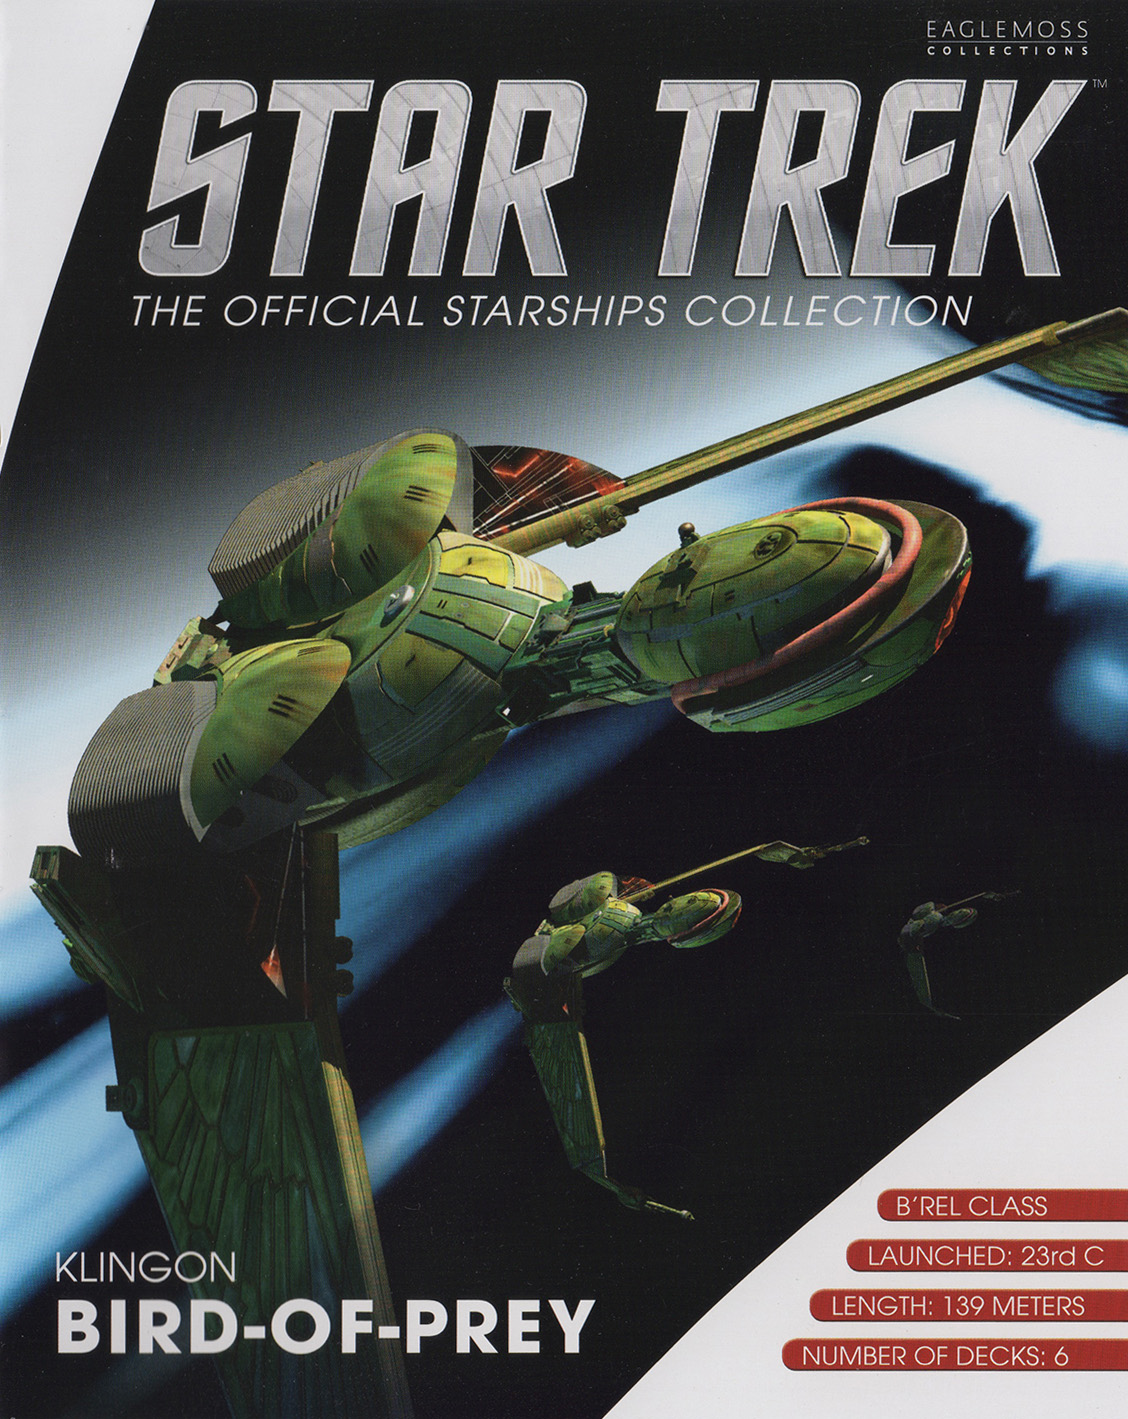 Eaglemoss Star Trek Starships Repack Magazine Klingon BoP